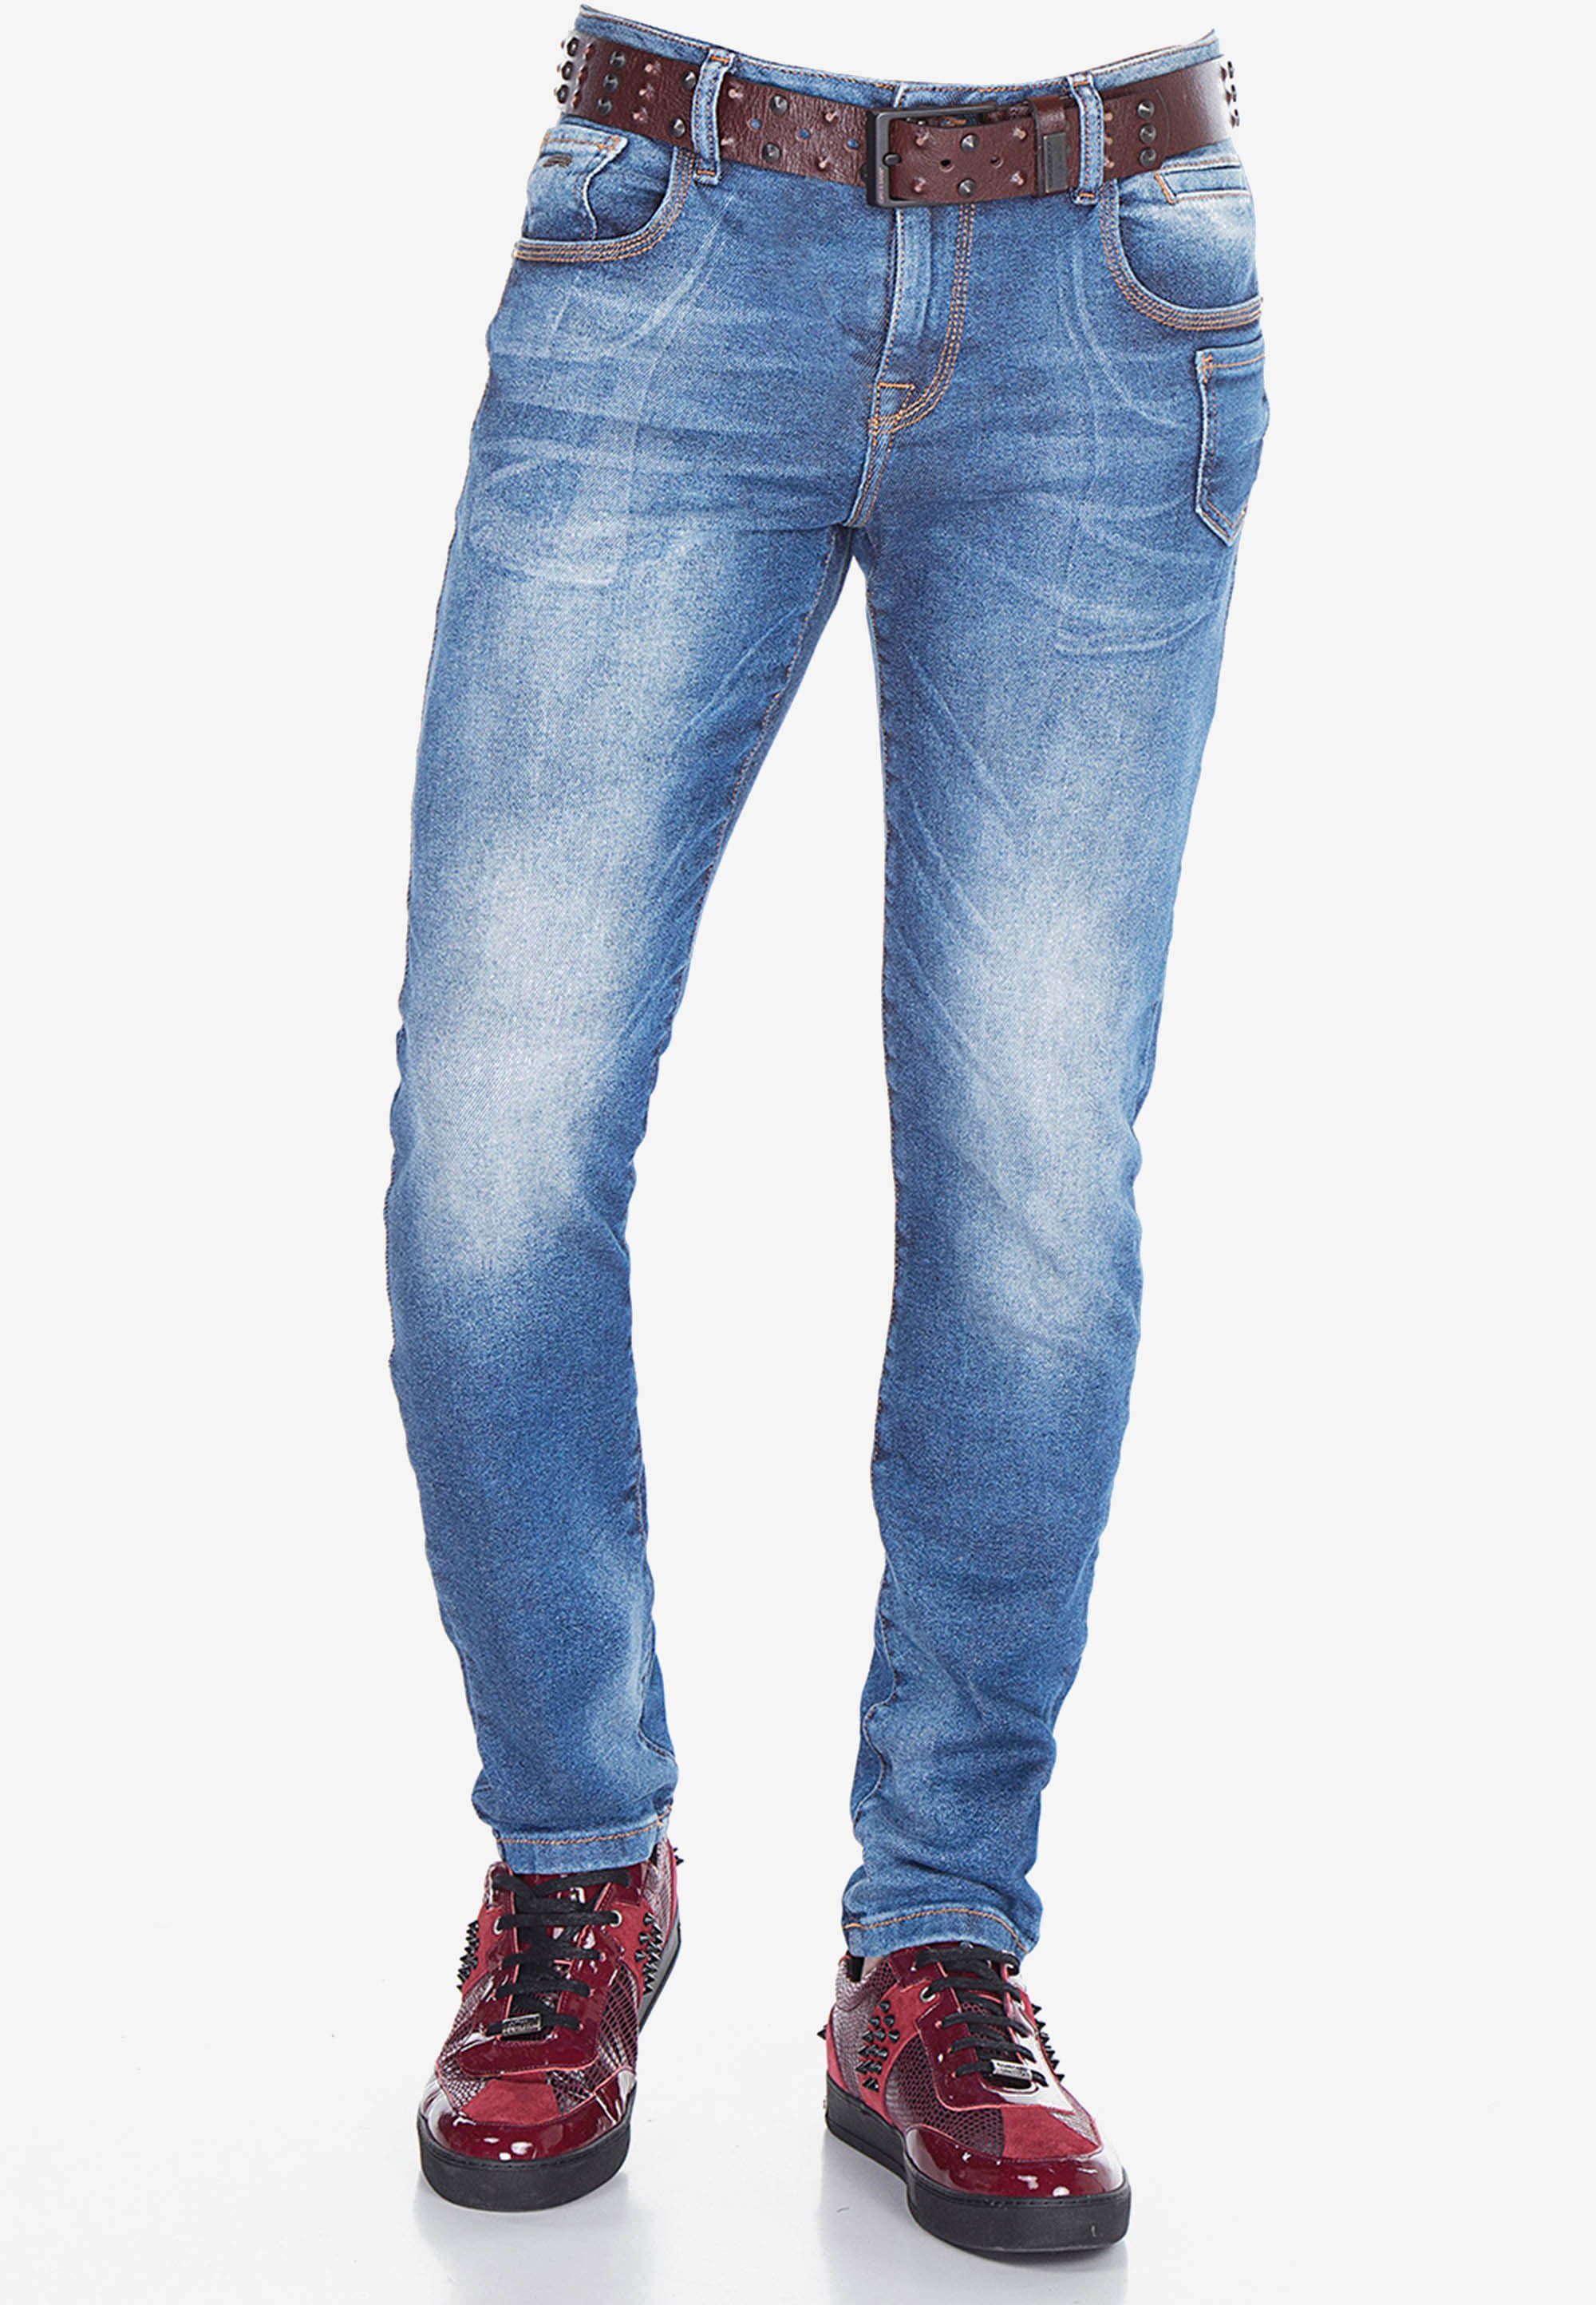 & Baxx klassischen Jeans 5-Pocket-Stil Bequeme im Cipo